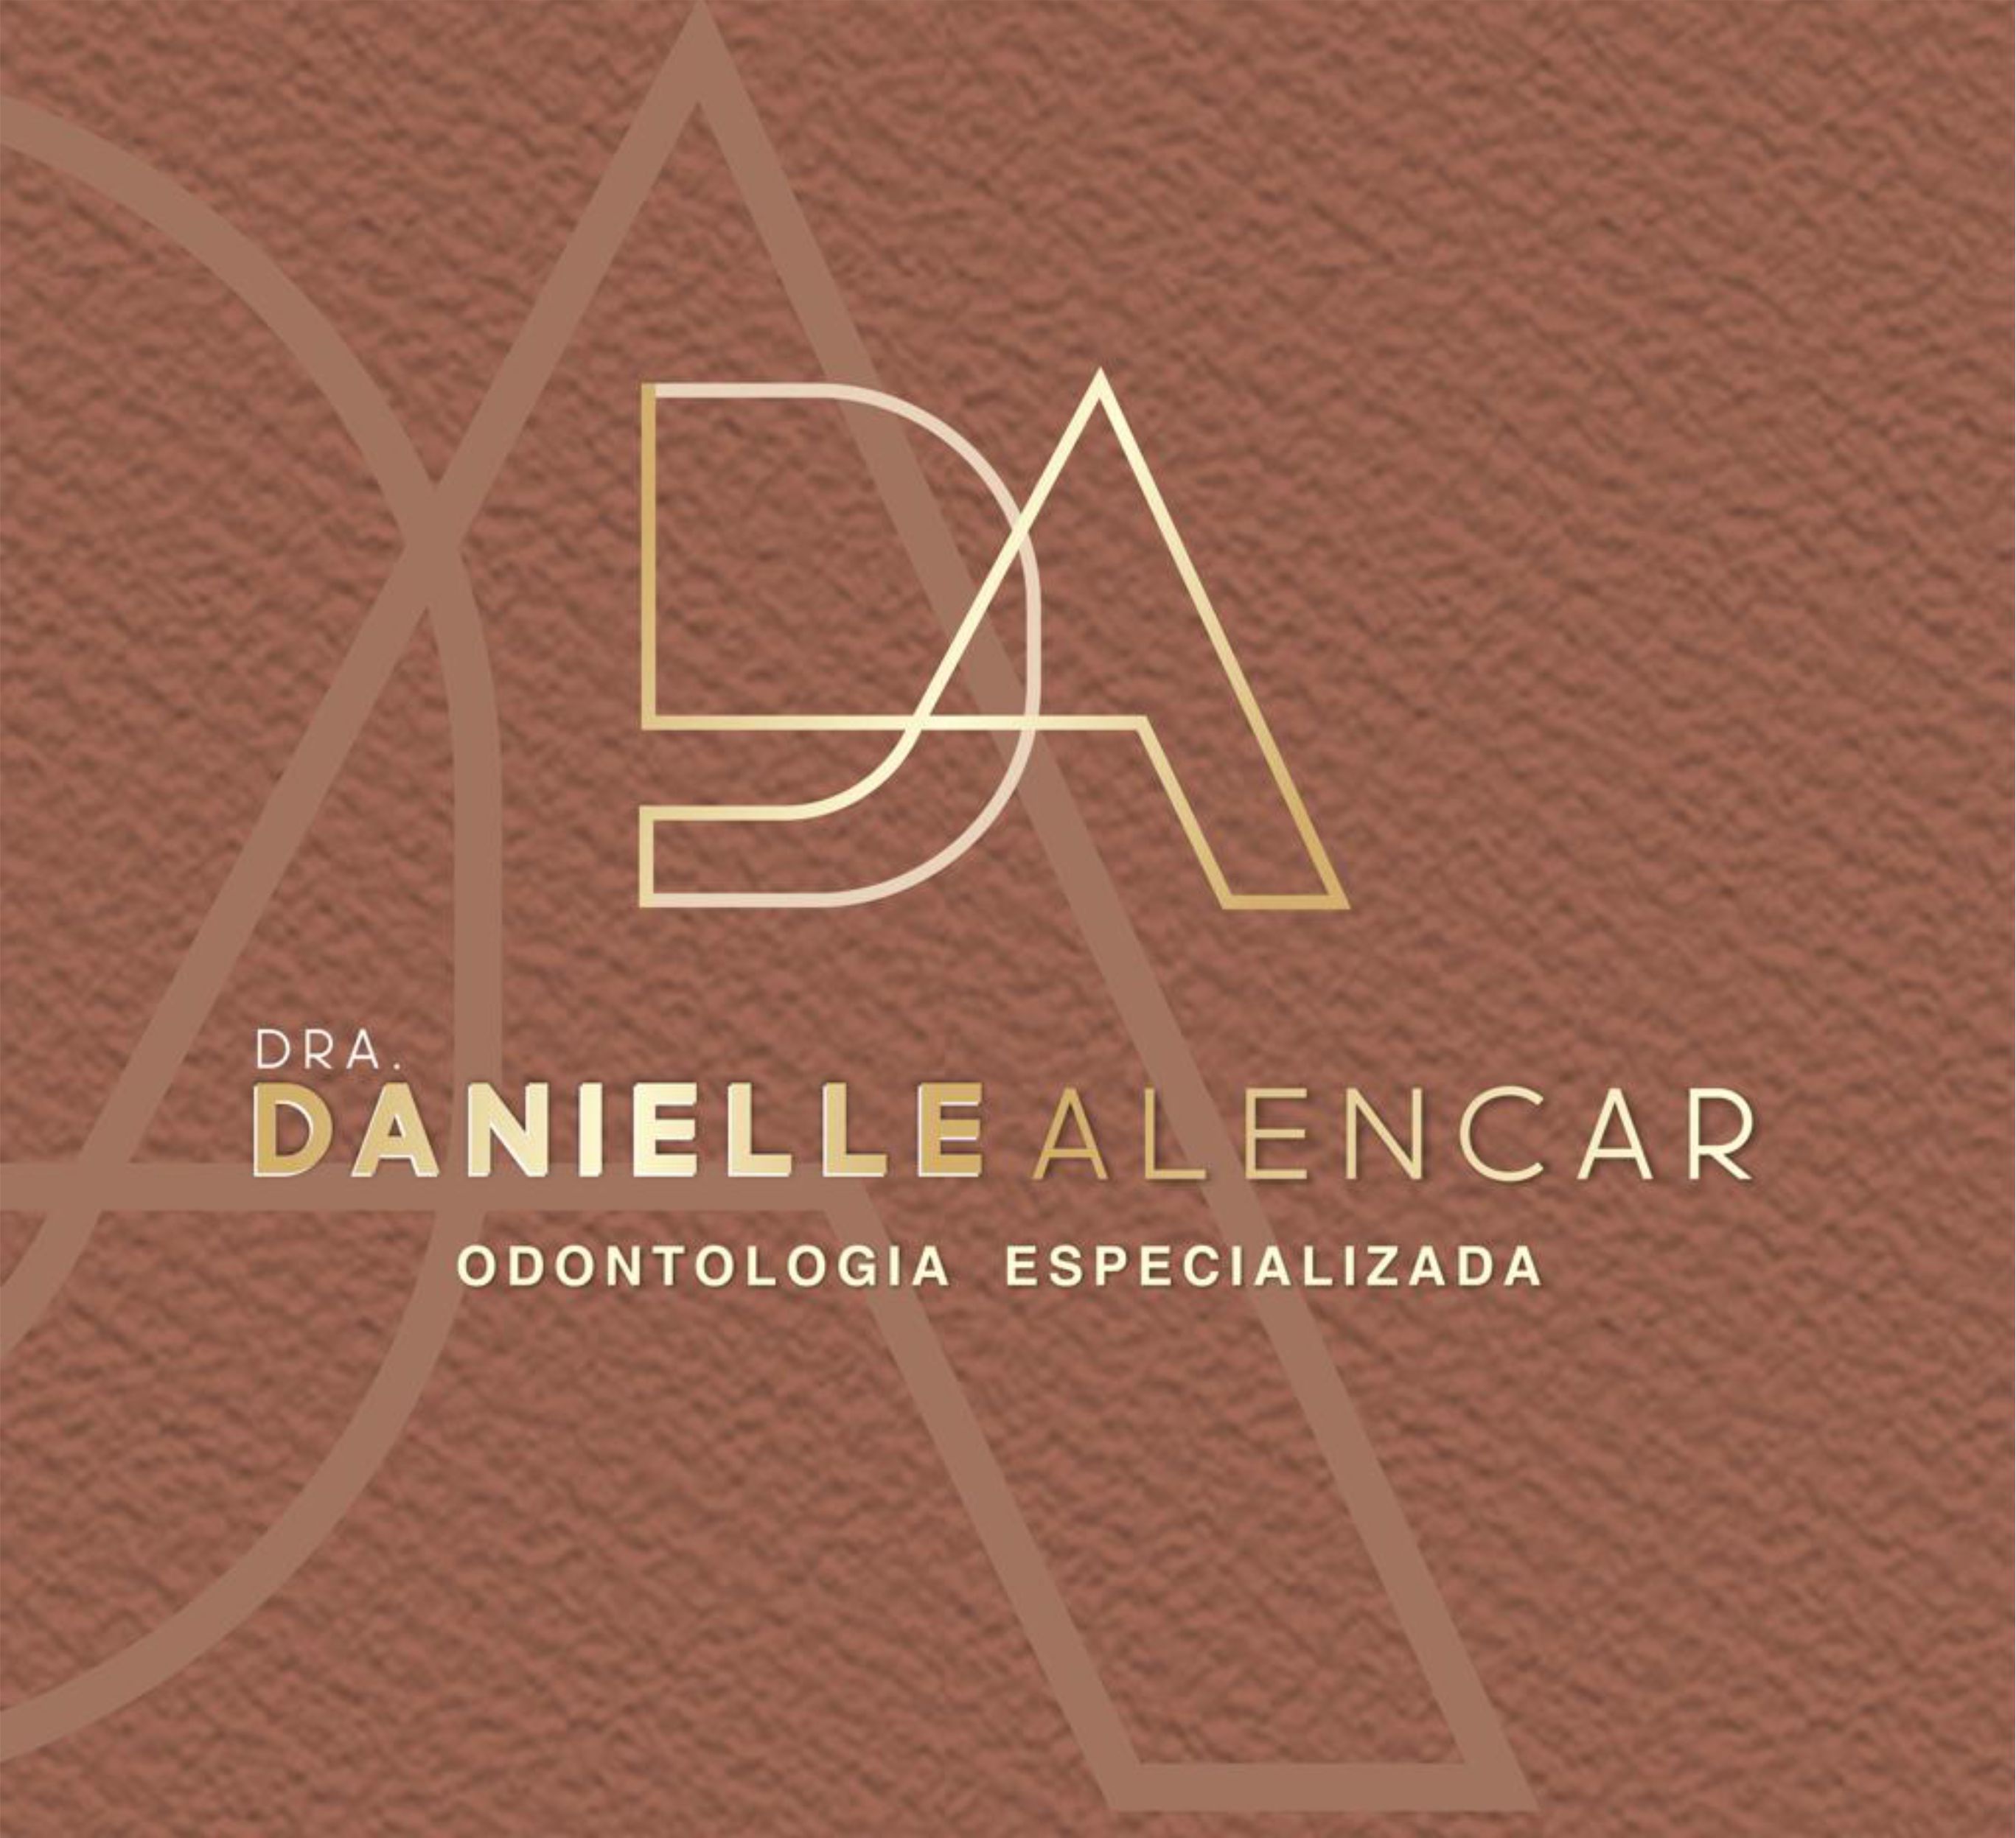 Dra. Danielle Alencar 